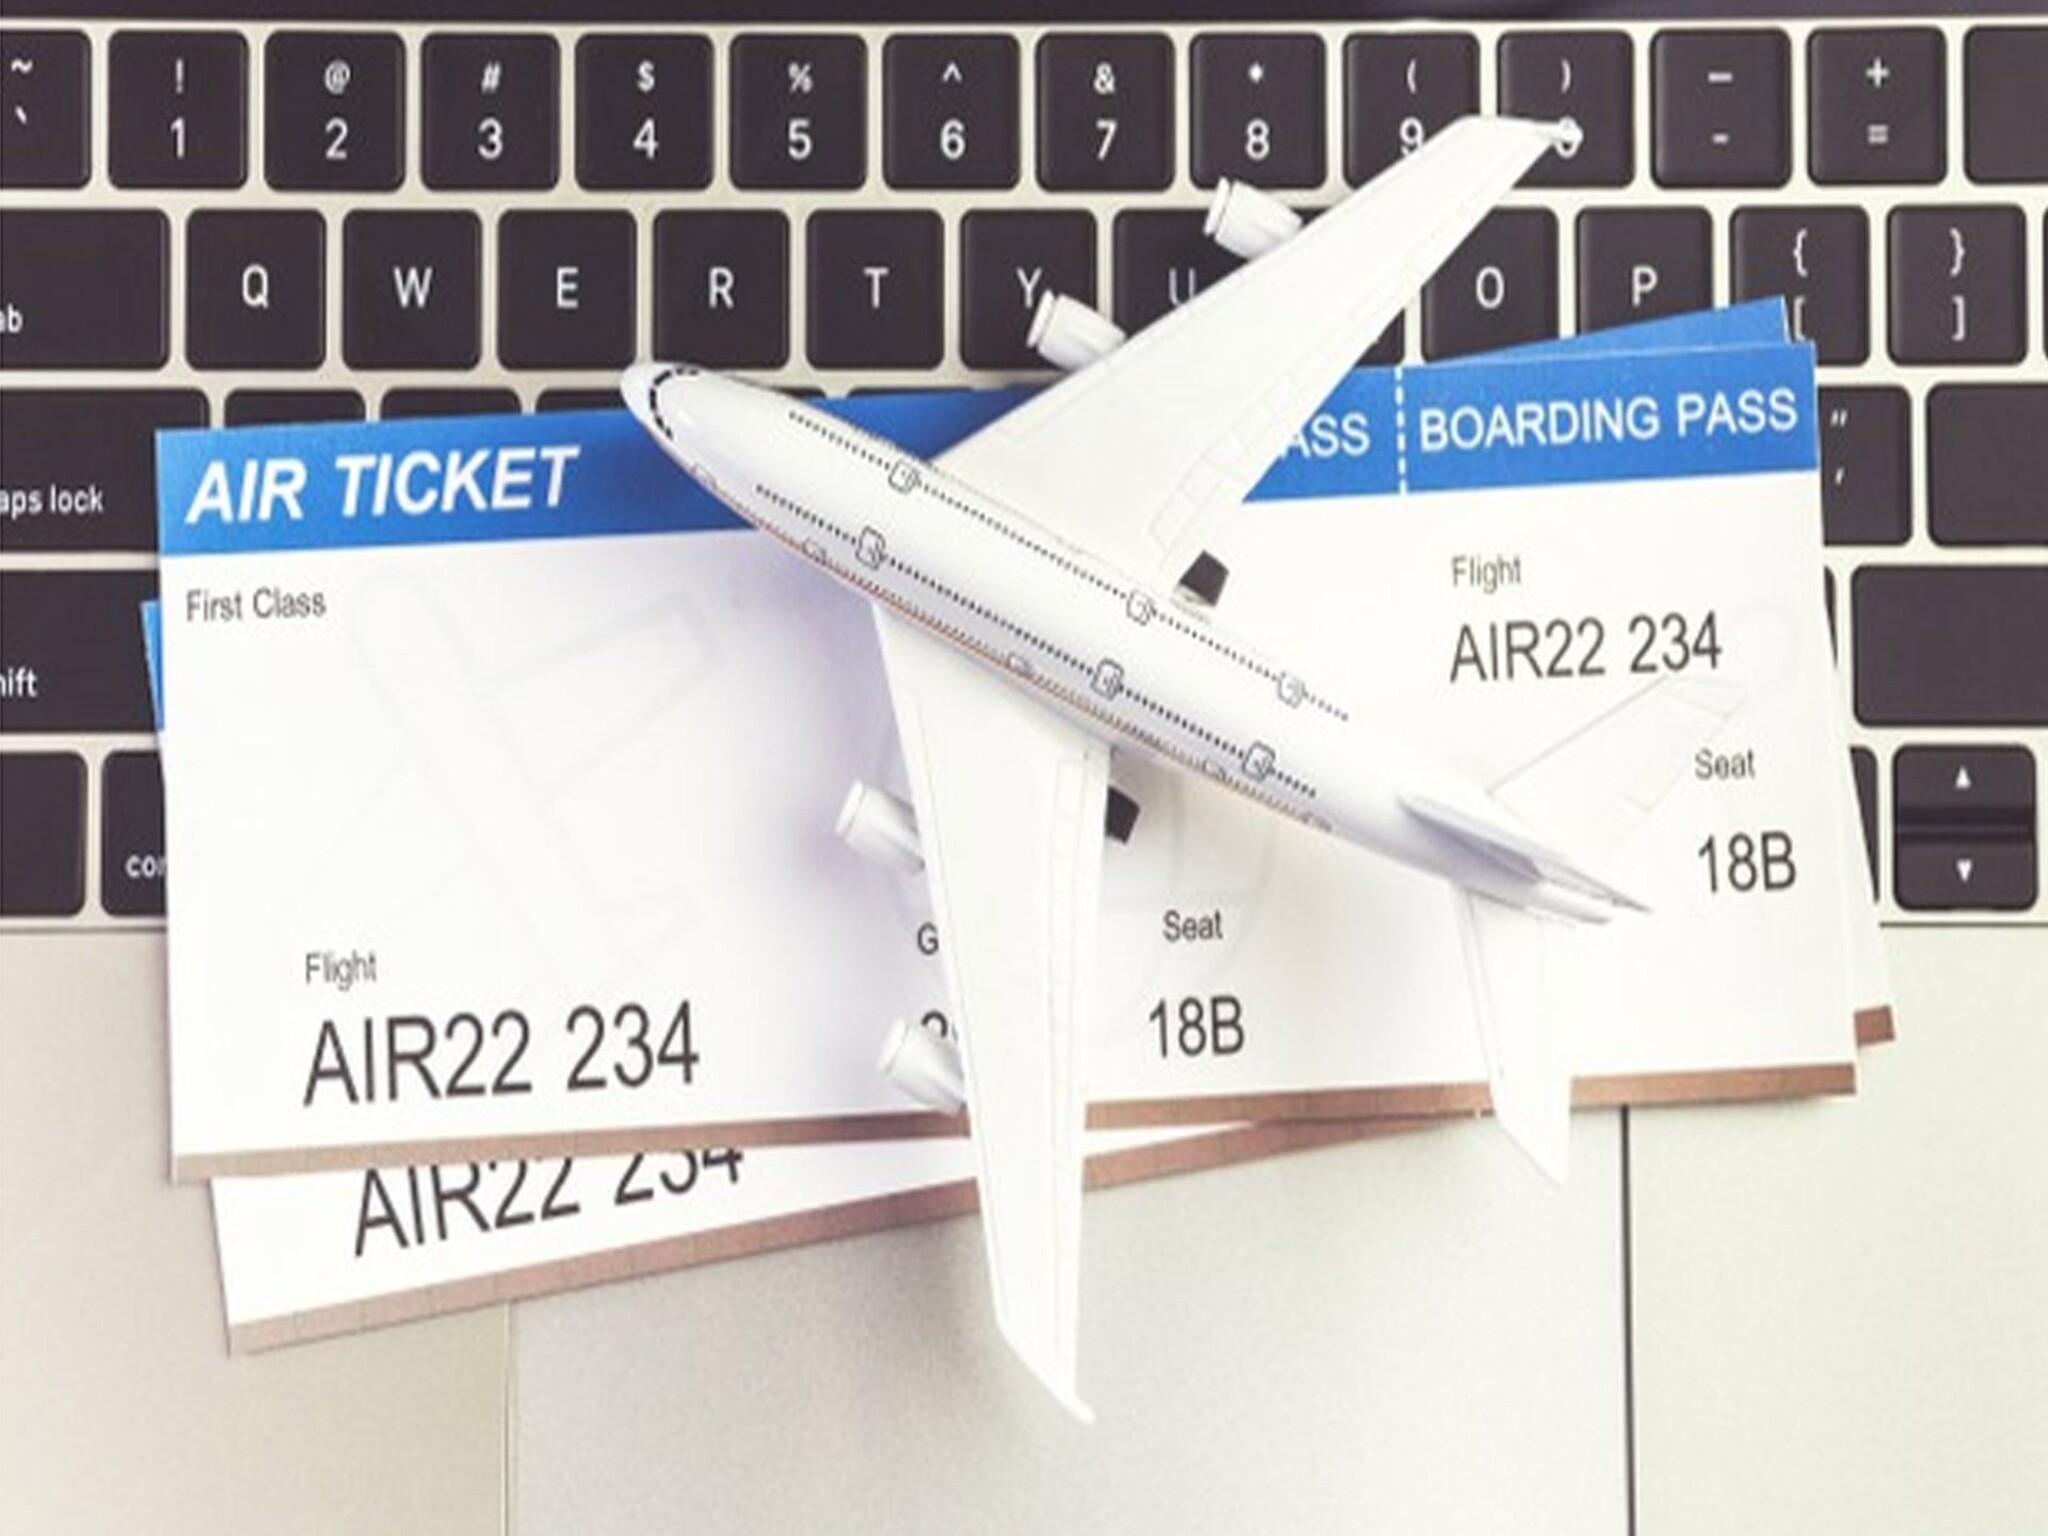 شركات توفر تذاكر طيران أرخص للسفر إلى الإمارات و بعض الوجهات الدولية